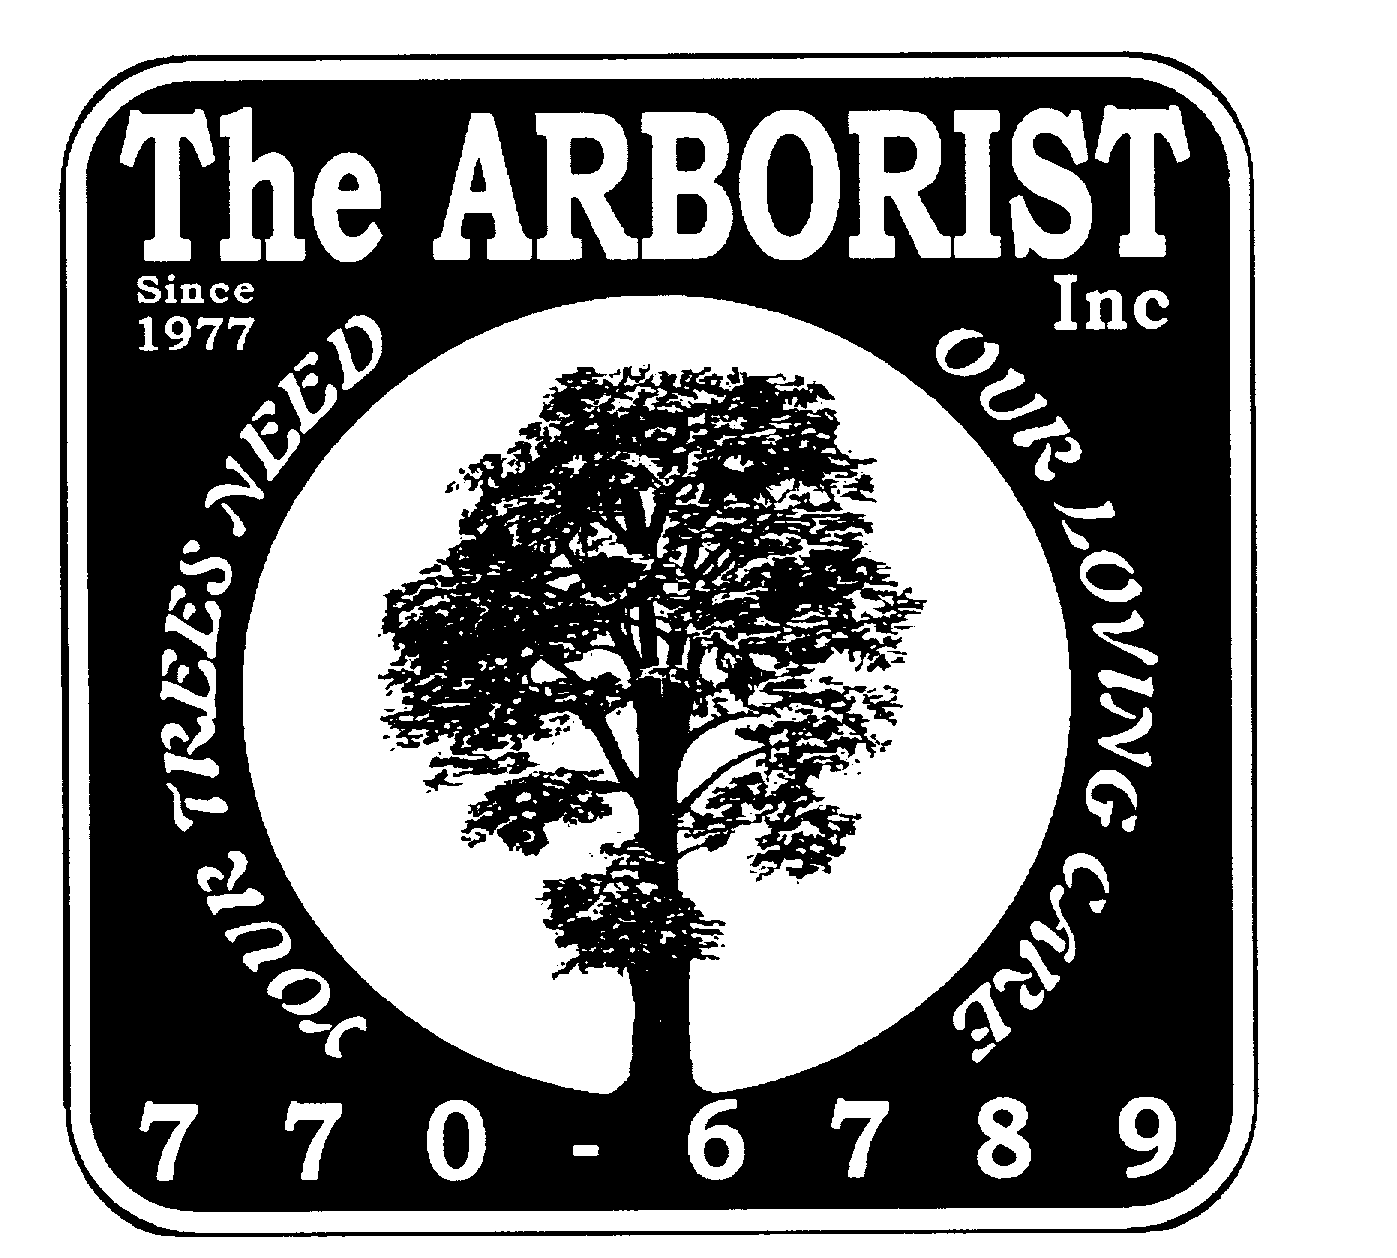 THE ARBORIST